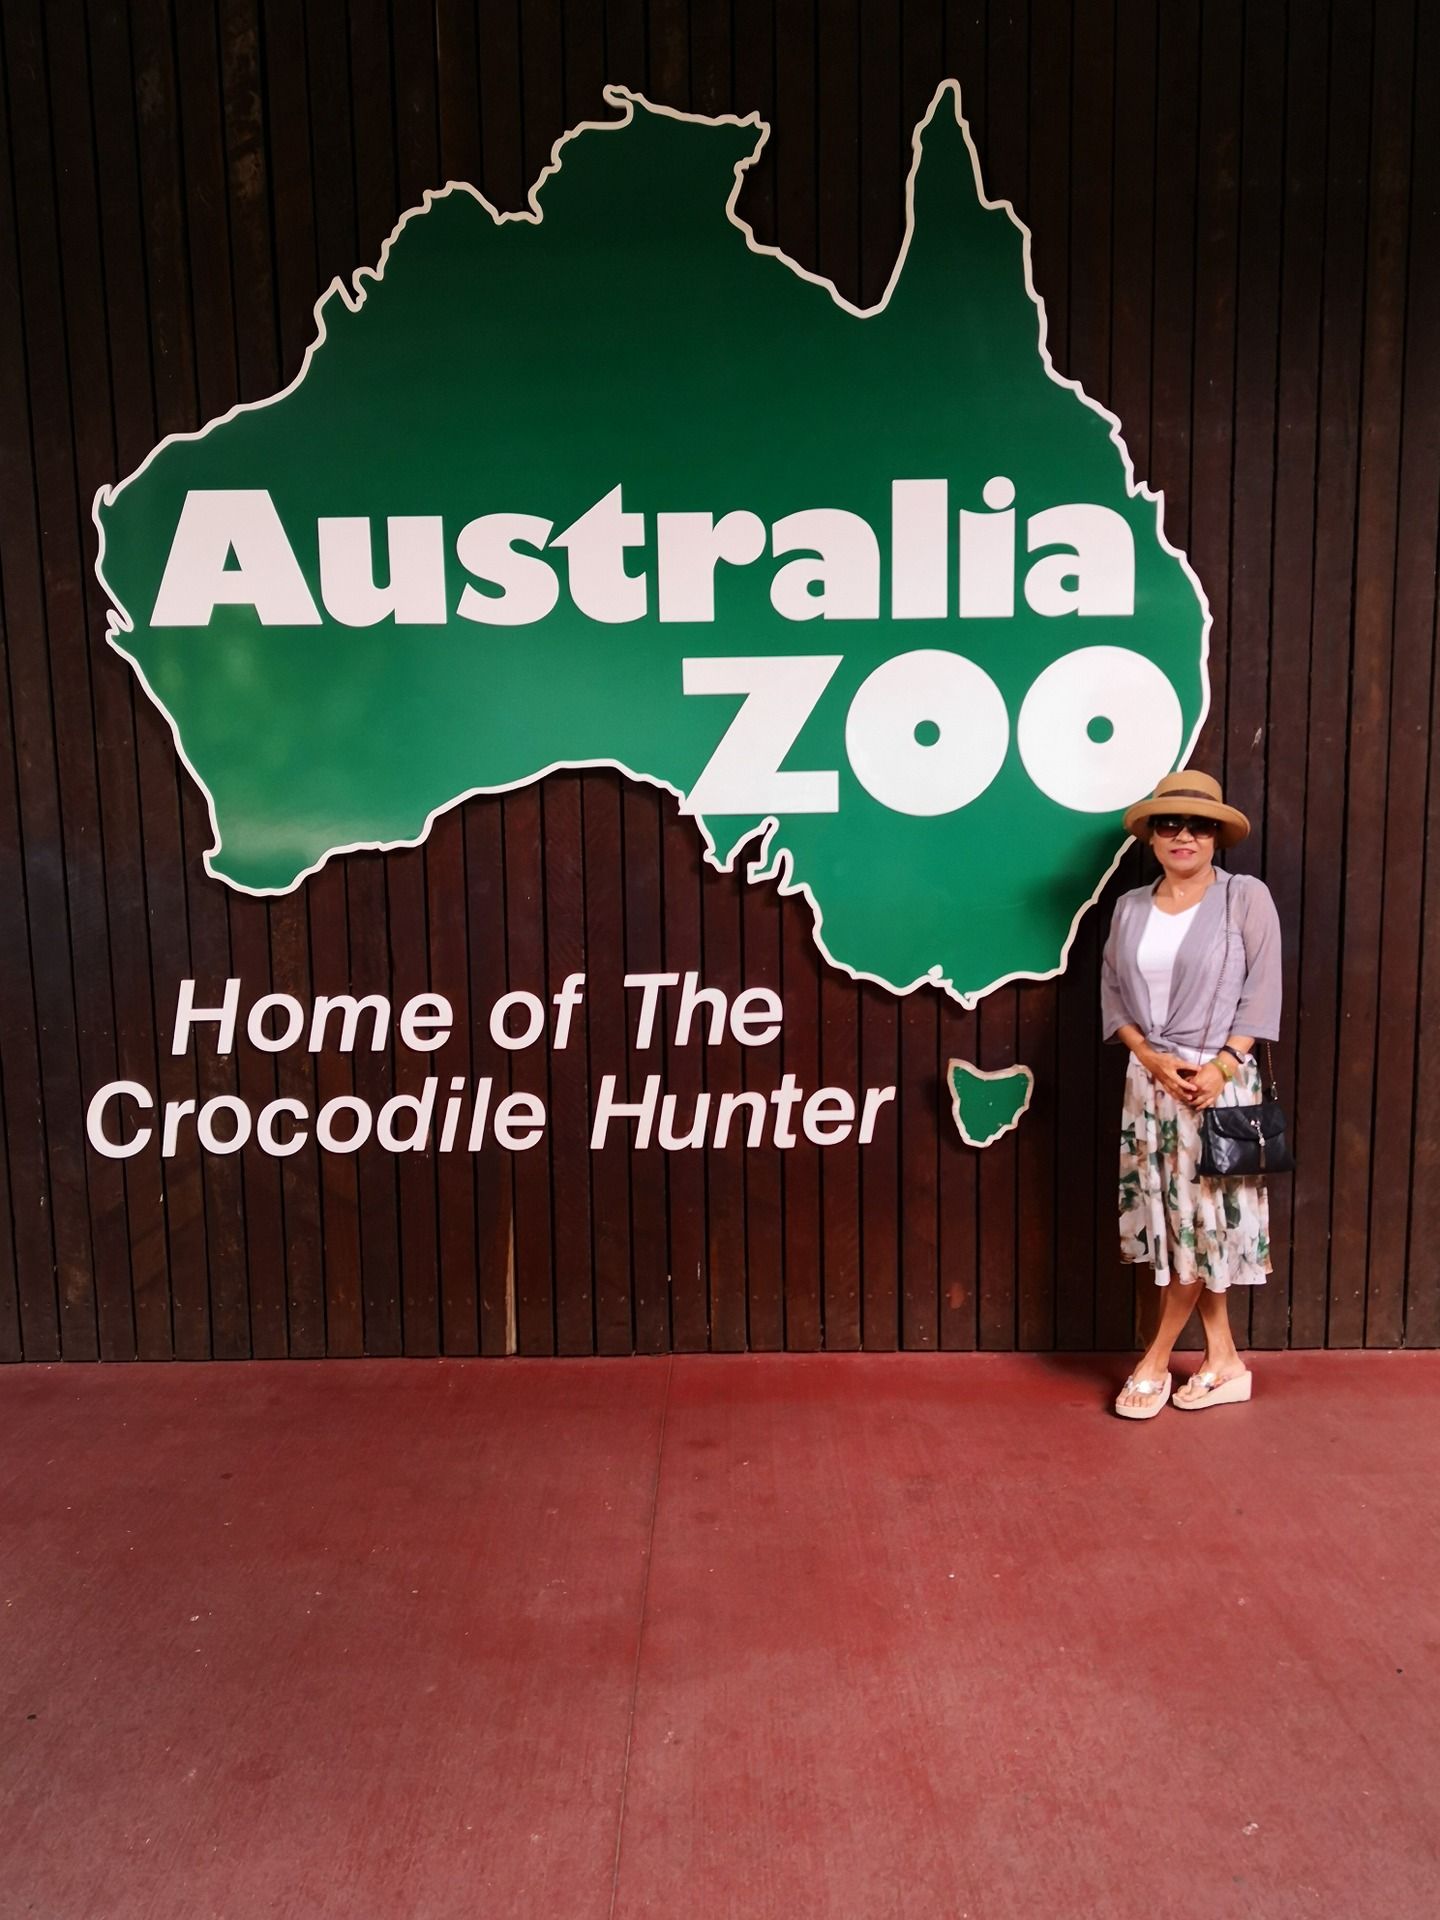 与悉尼的动物园相比，位于澳洲昆士兰、由著名鳄鱼猎人Steve Irwin 家族创办的澳洲动物园面积更